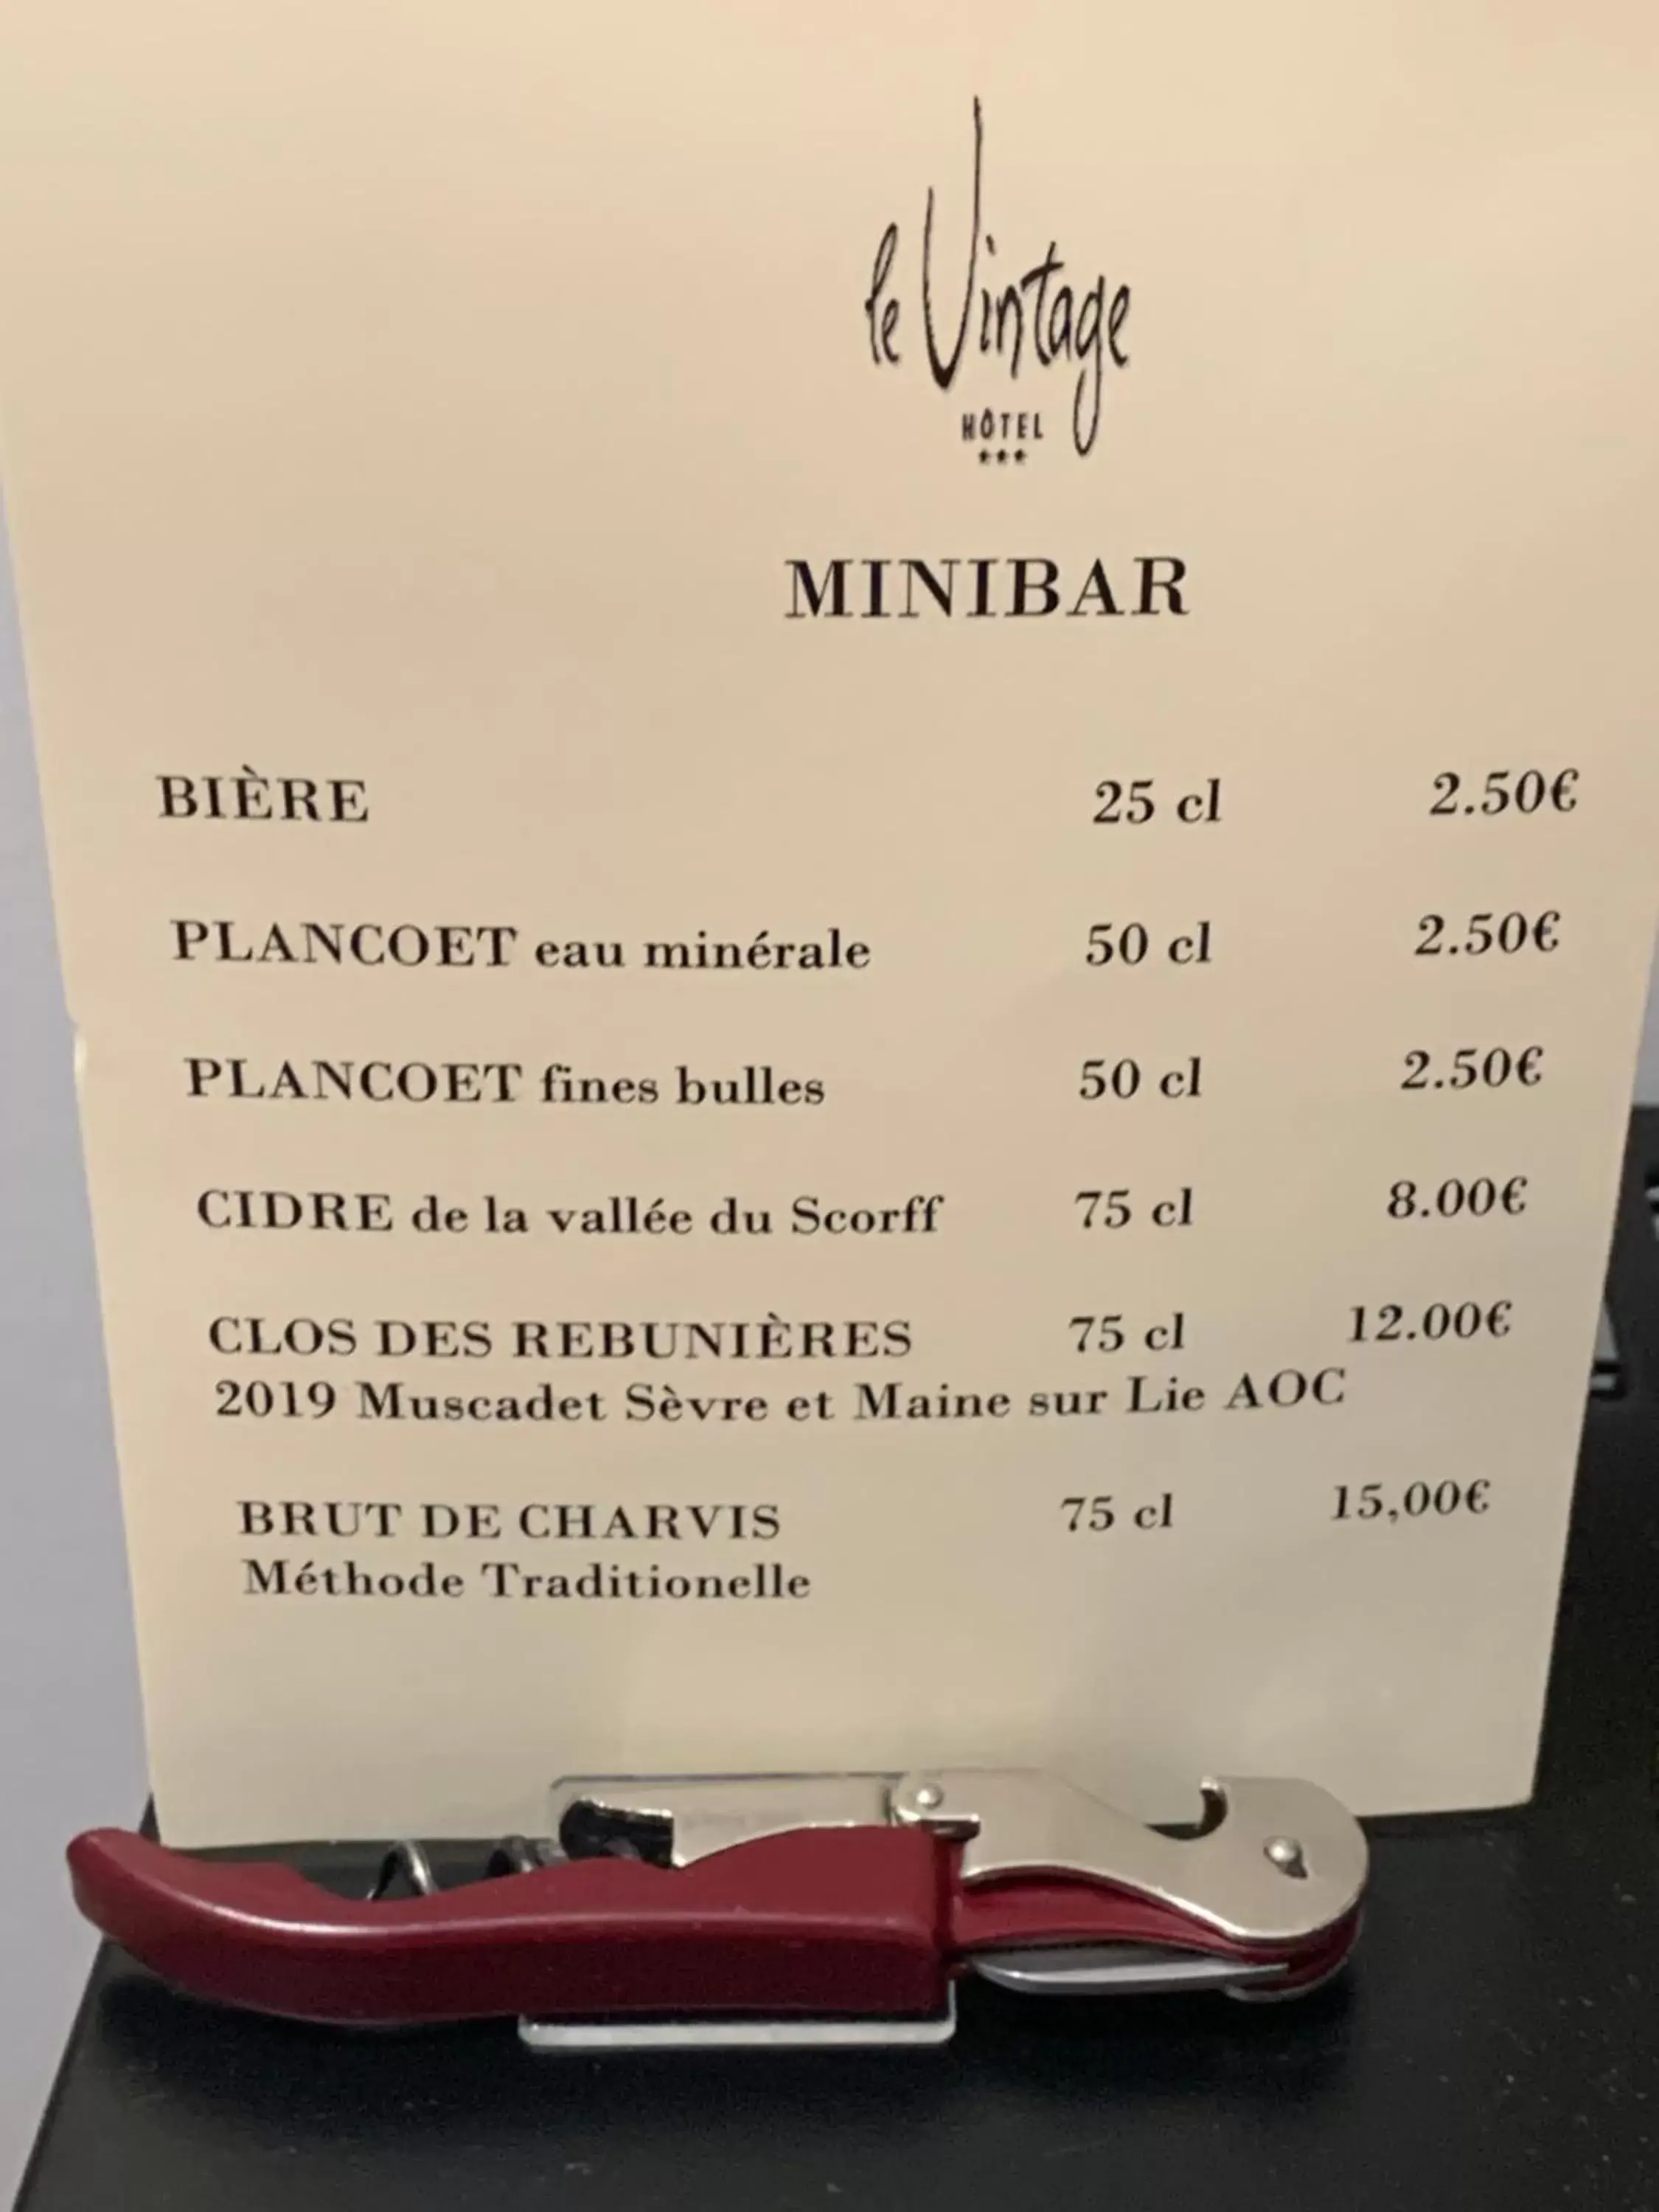 Drinks in Hôtel Vintage